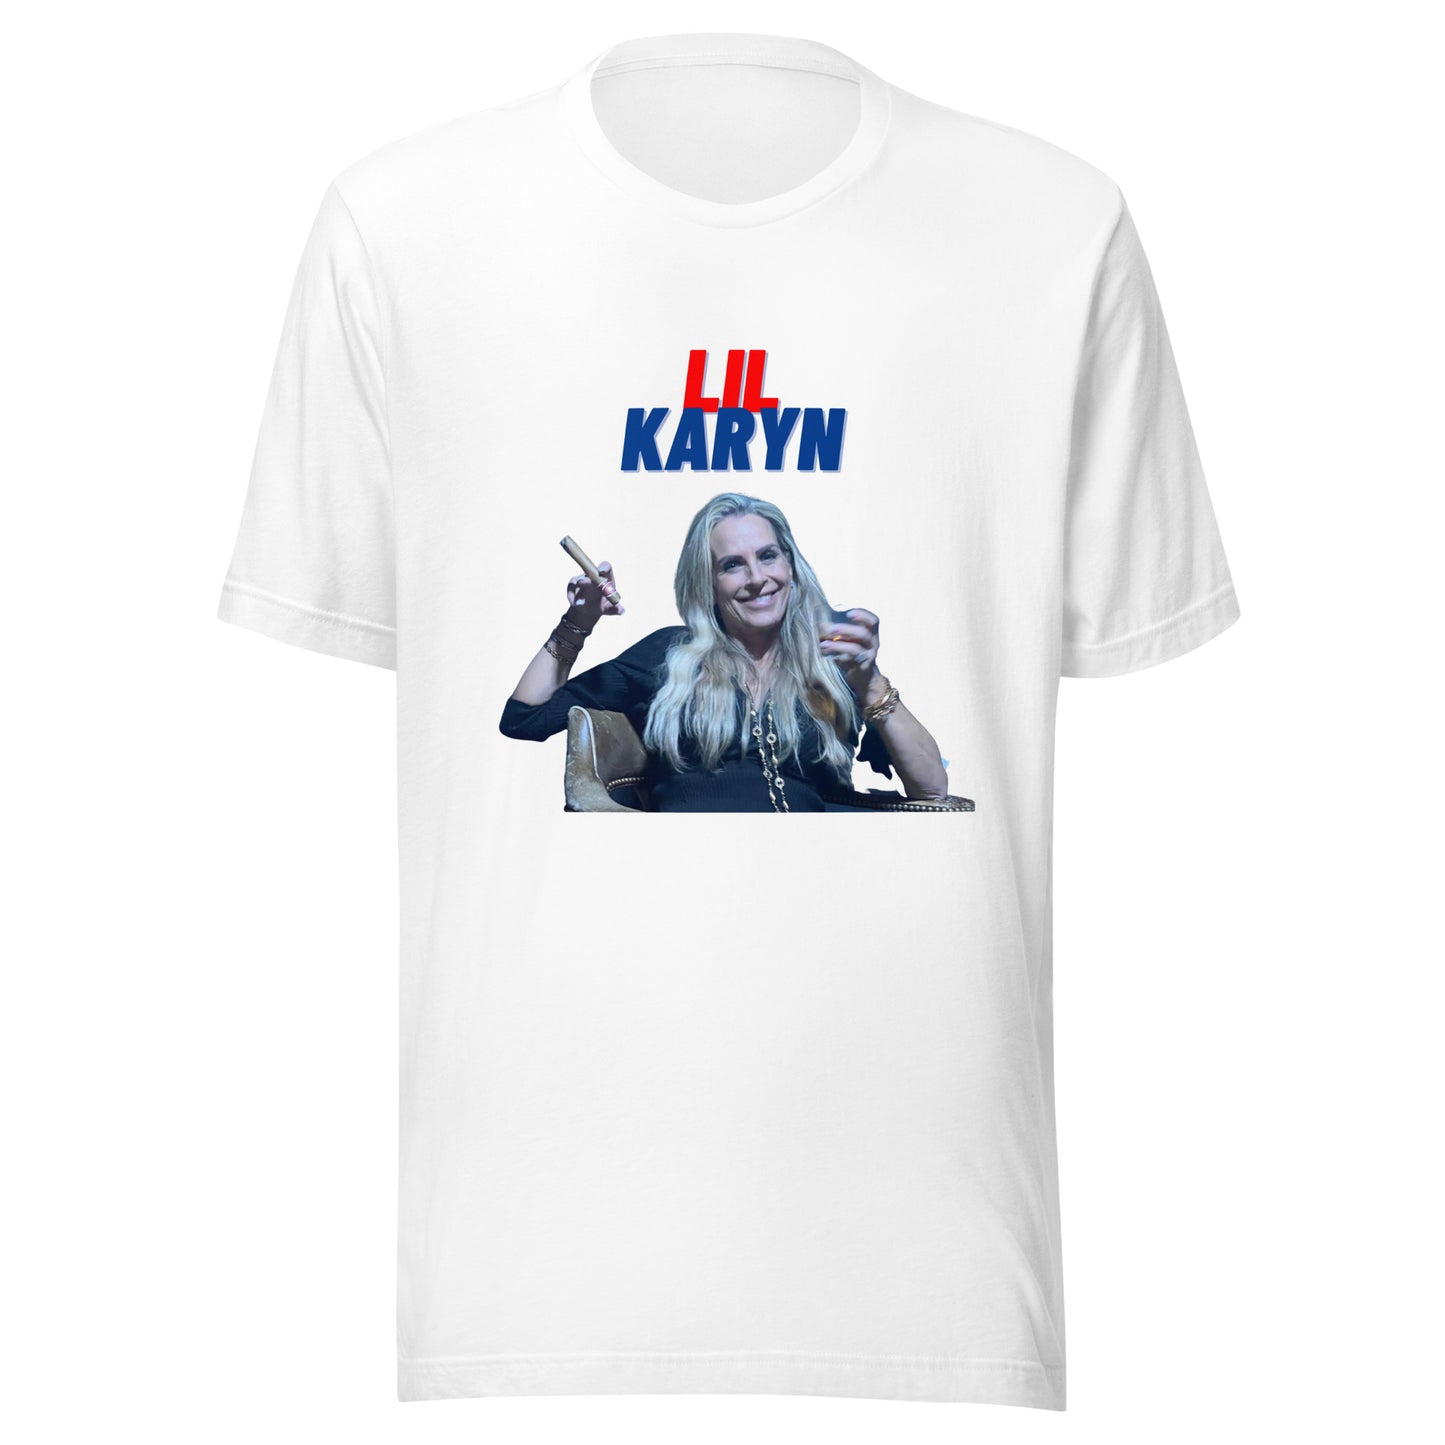 Lil Karyn t-shirt